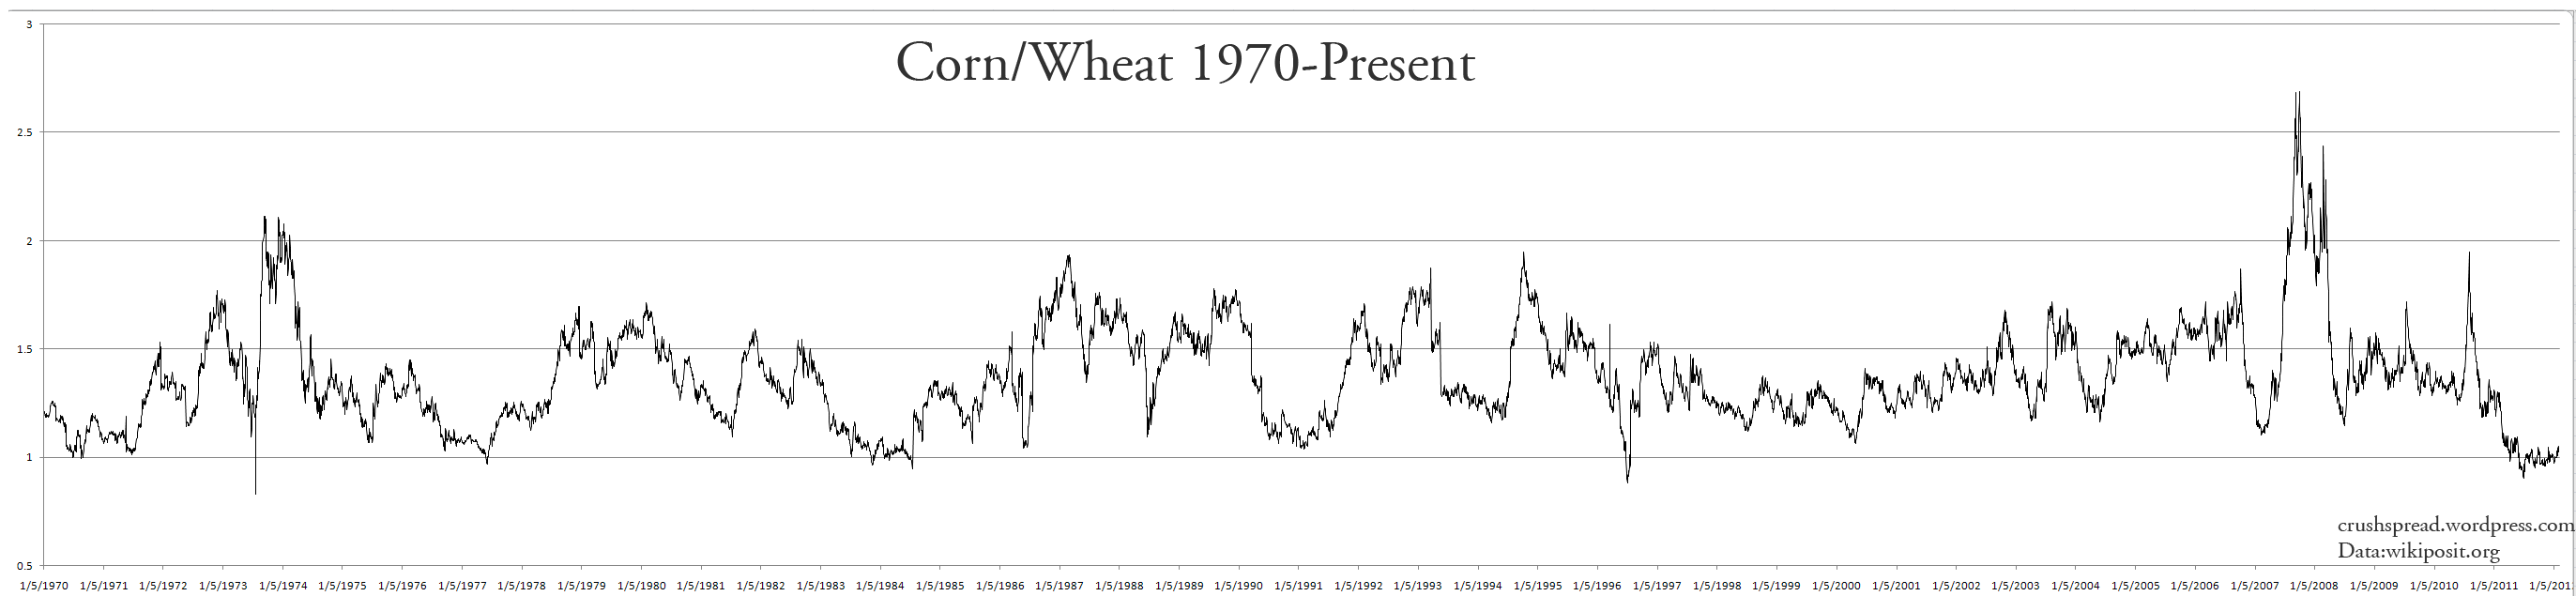 изменения стоимости пшеницы с 1970